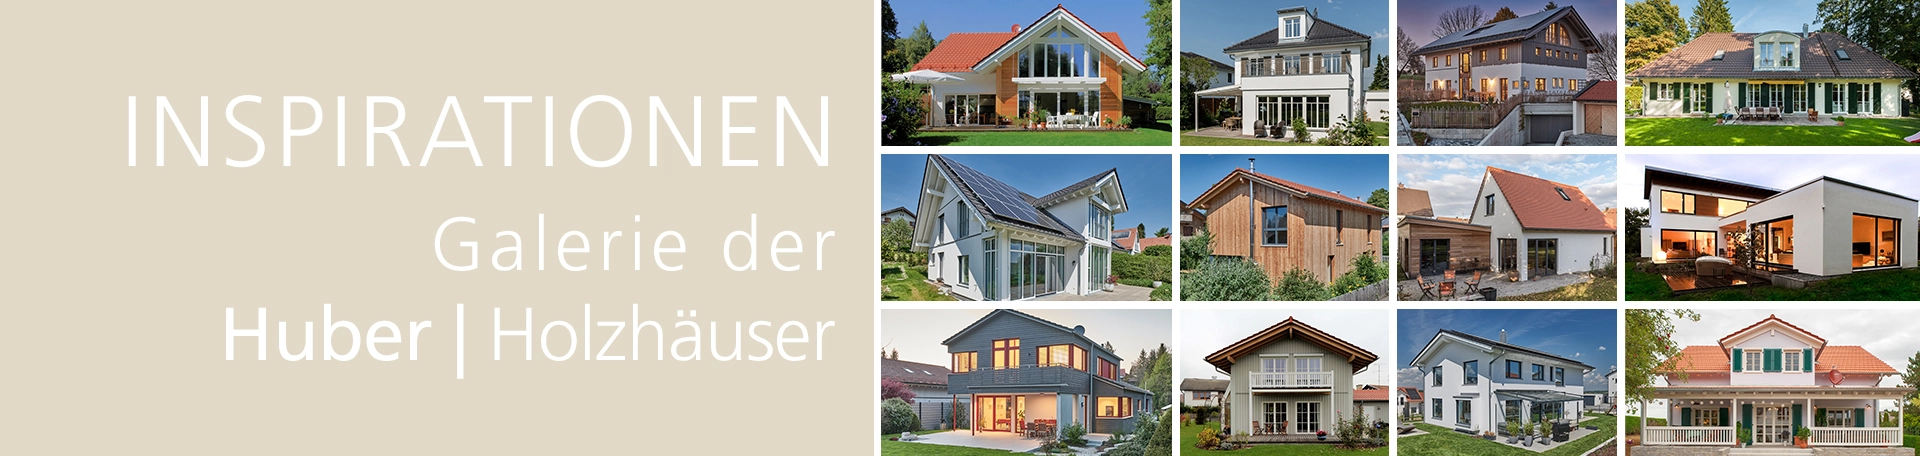 Holz Huber  Ideen für Haus & Garten by Kaiser Design - Issuu